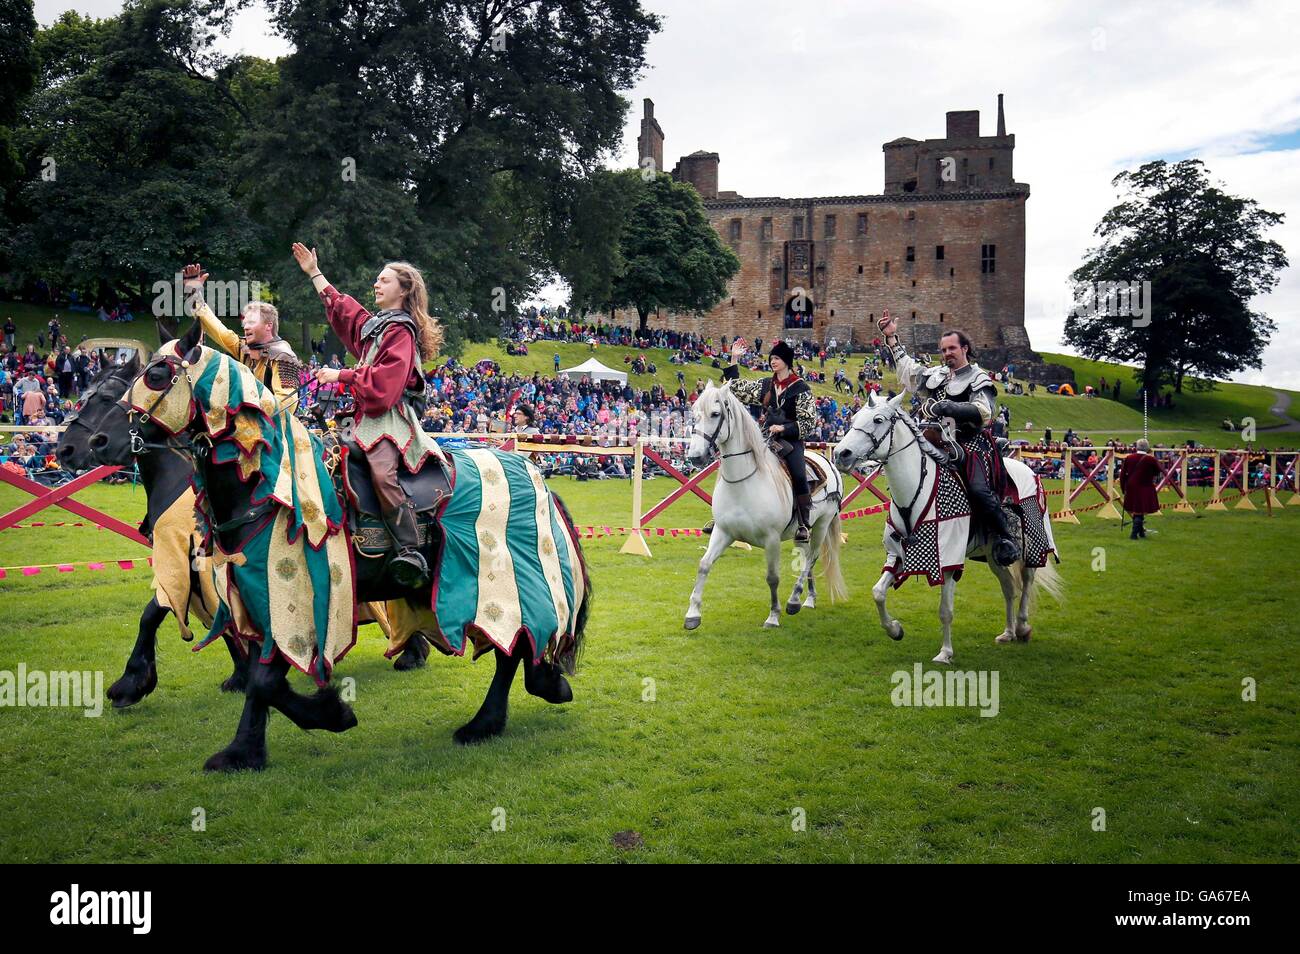 Mitglieder der Les Amis D'Onno, eine lebendige Geschichte stunt Künstlergruppe, an eine jährliche Mittelalterliches Ritterturnier am Linlithgow Palace, West Lothian, Schottland teilnehmen. Stockfoto